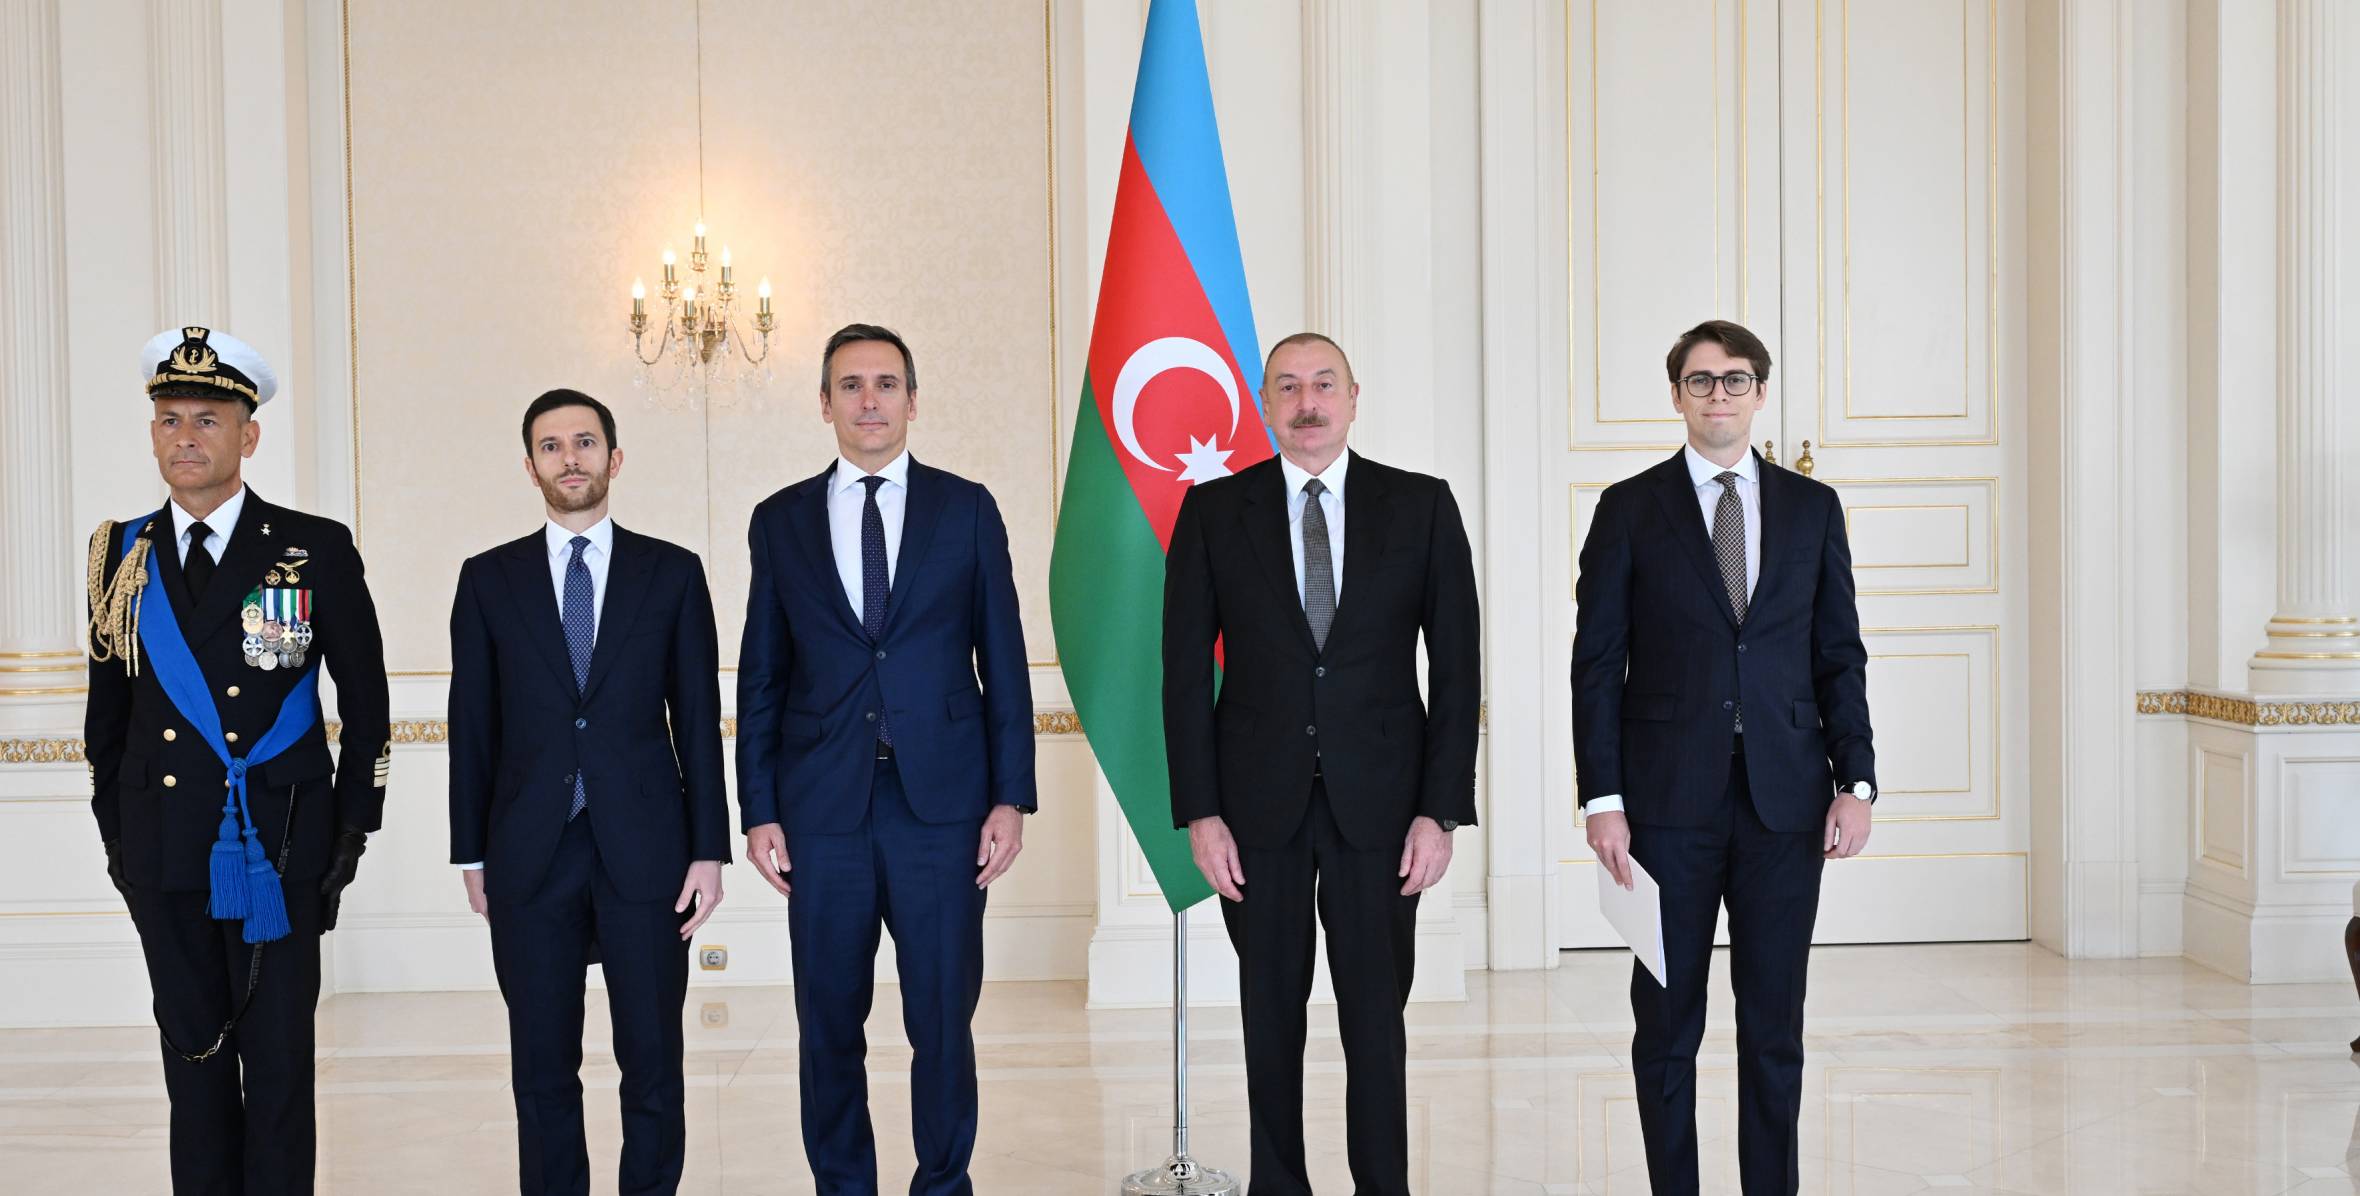 Ильхам Алиев принял верительные грамоты новоназначенного посла Италии в нашей стране